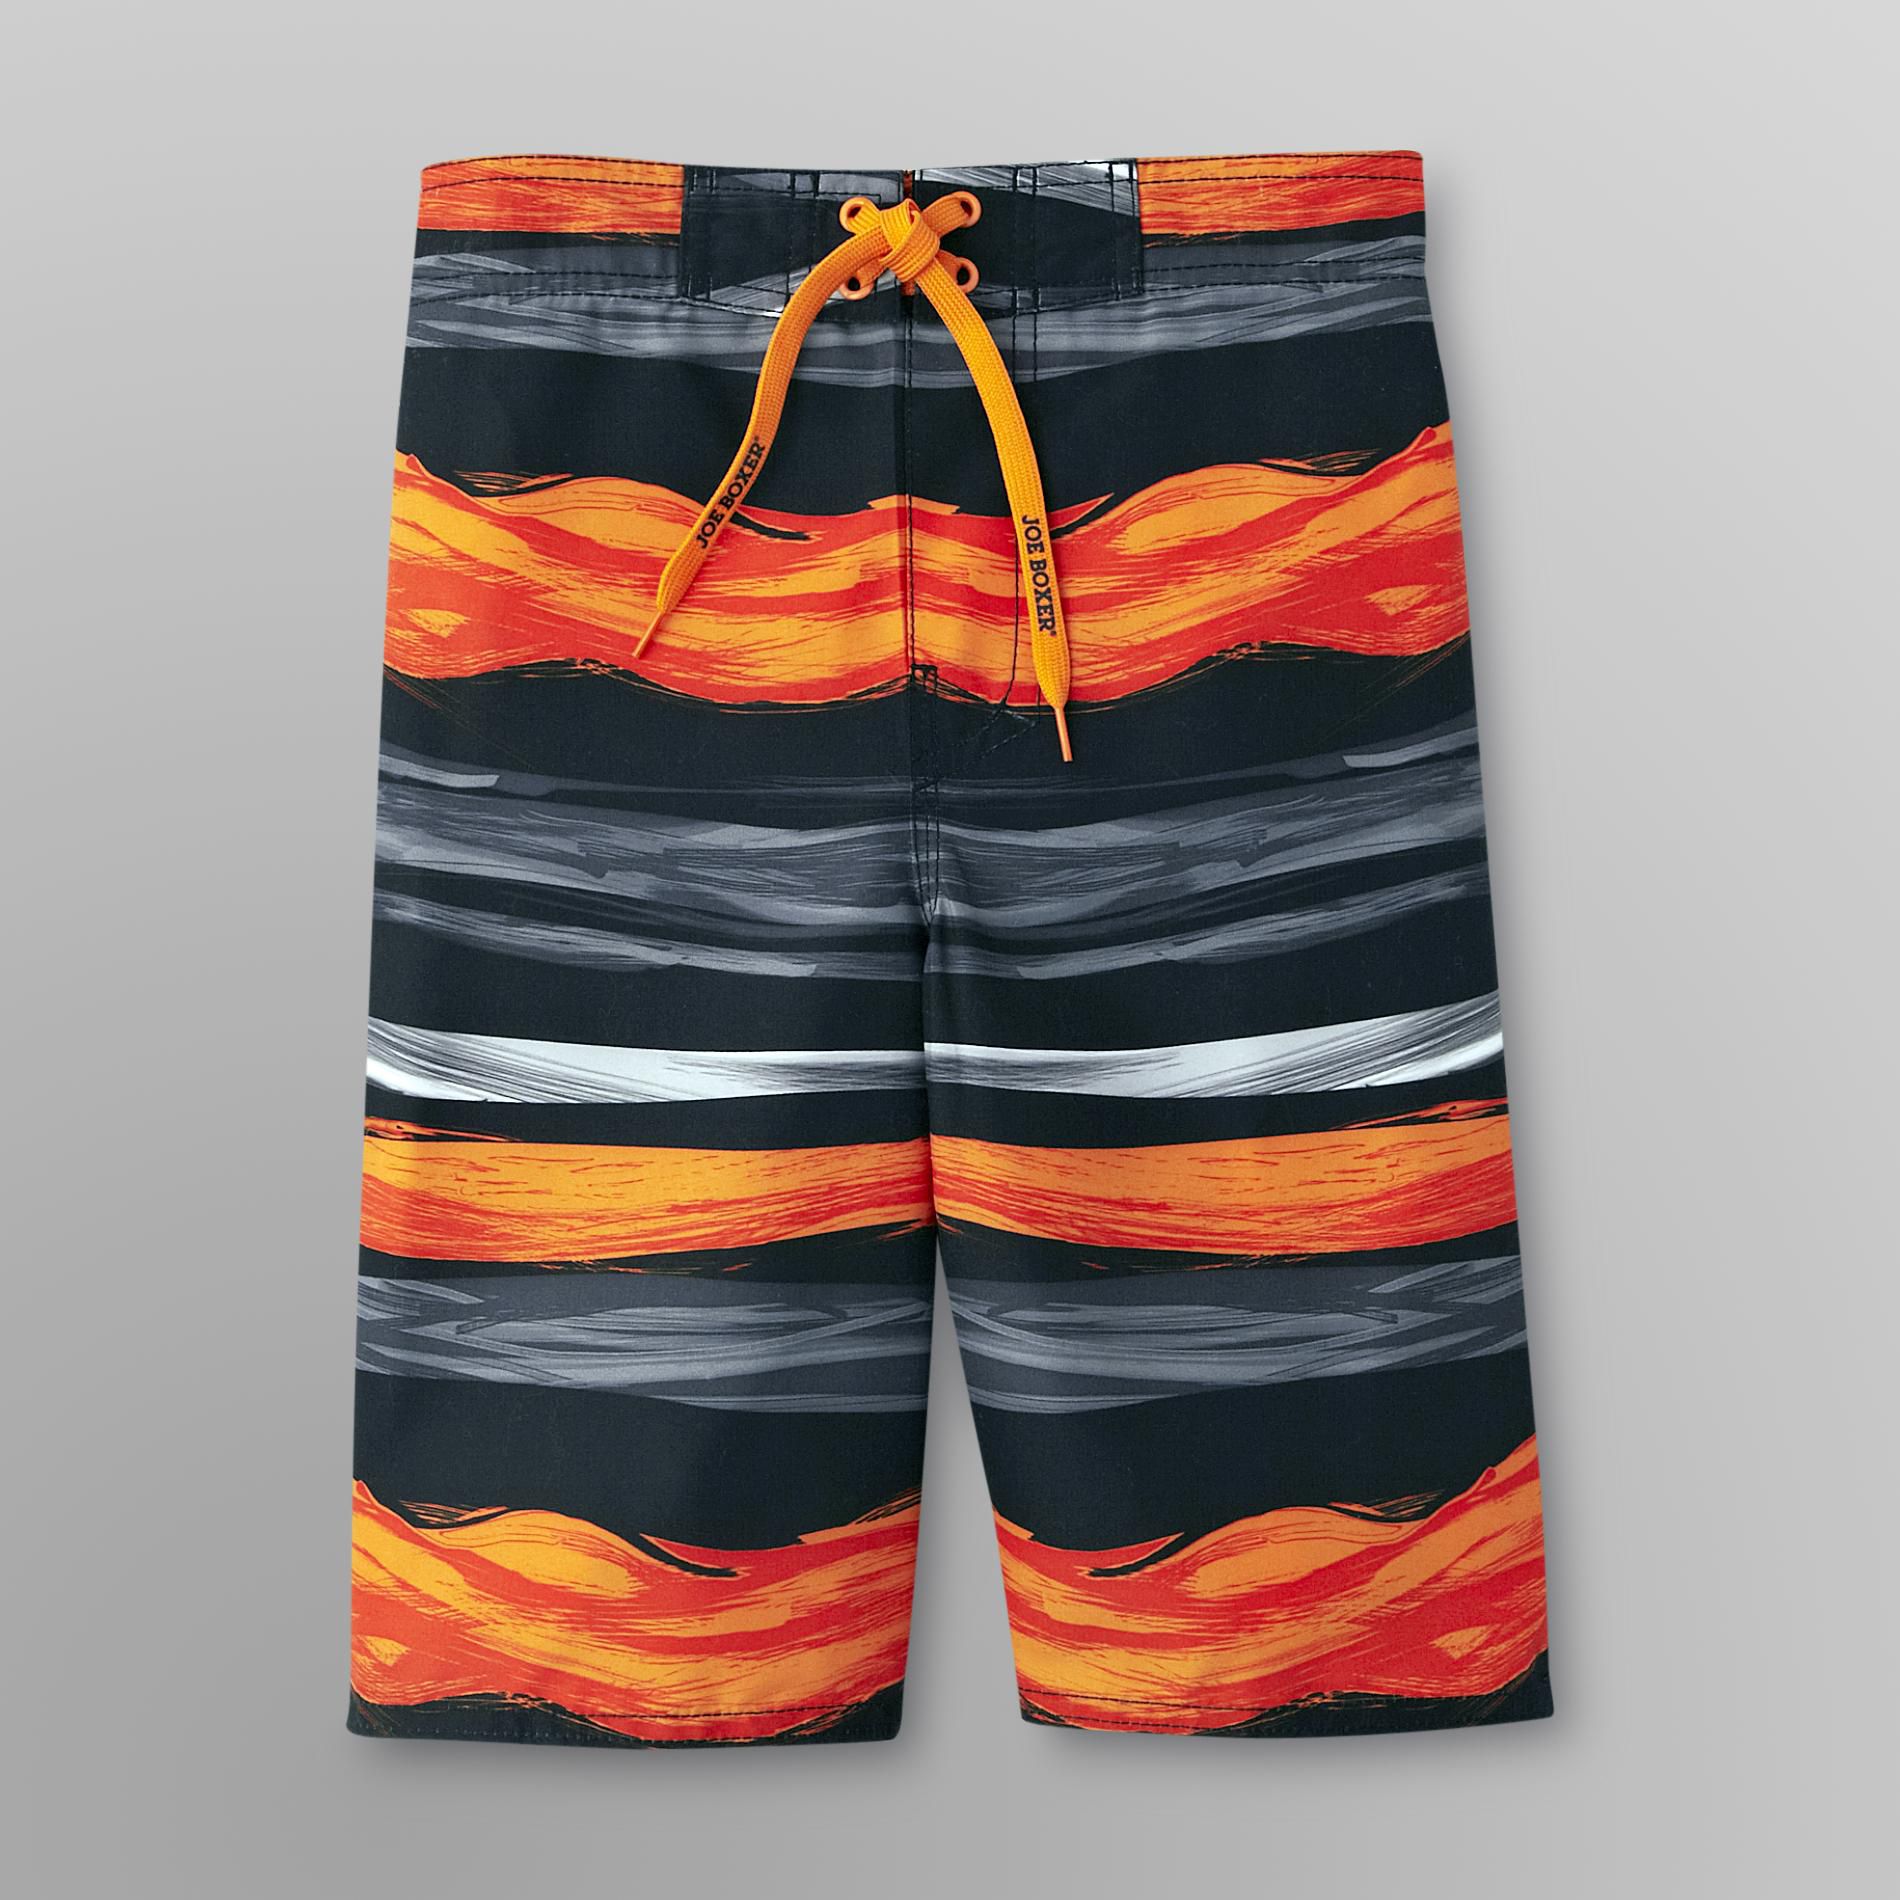 Joe Boxer Boy's Swim Trunks - Striped